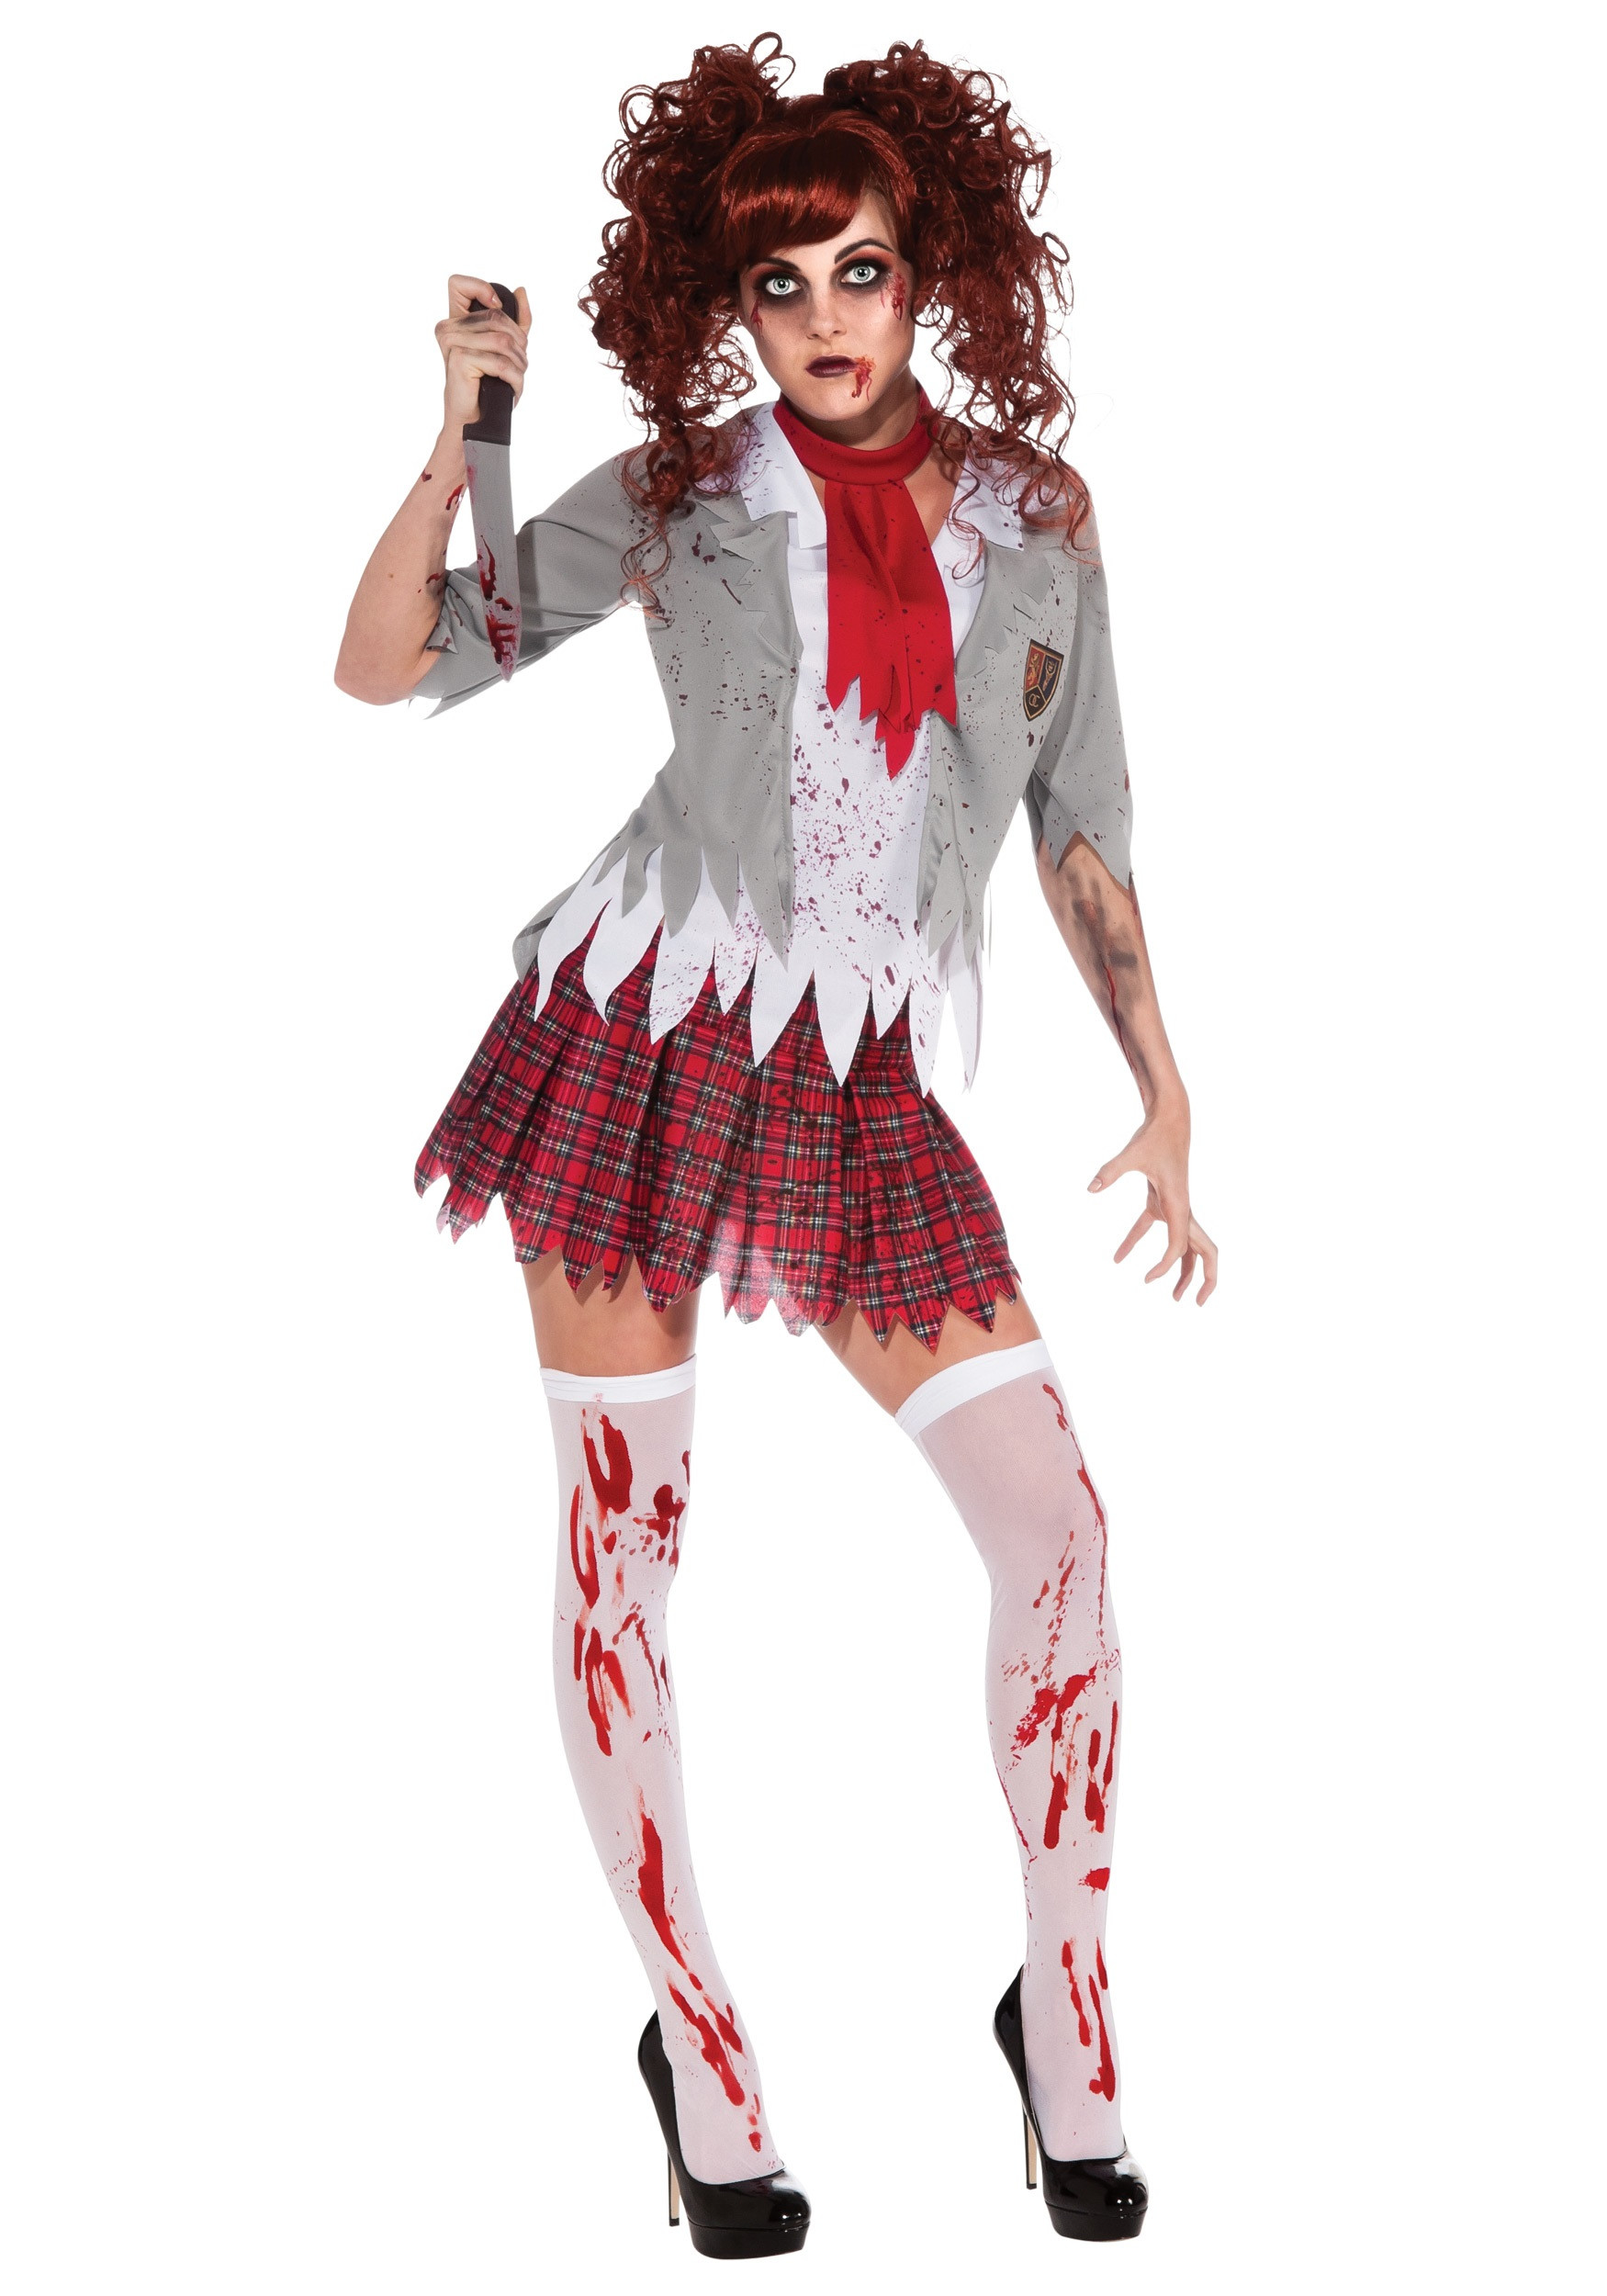 School Girl Costume DIY
 Zombie School Girl Costume